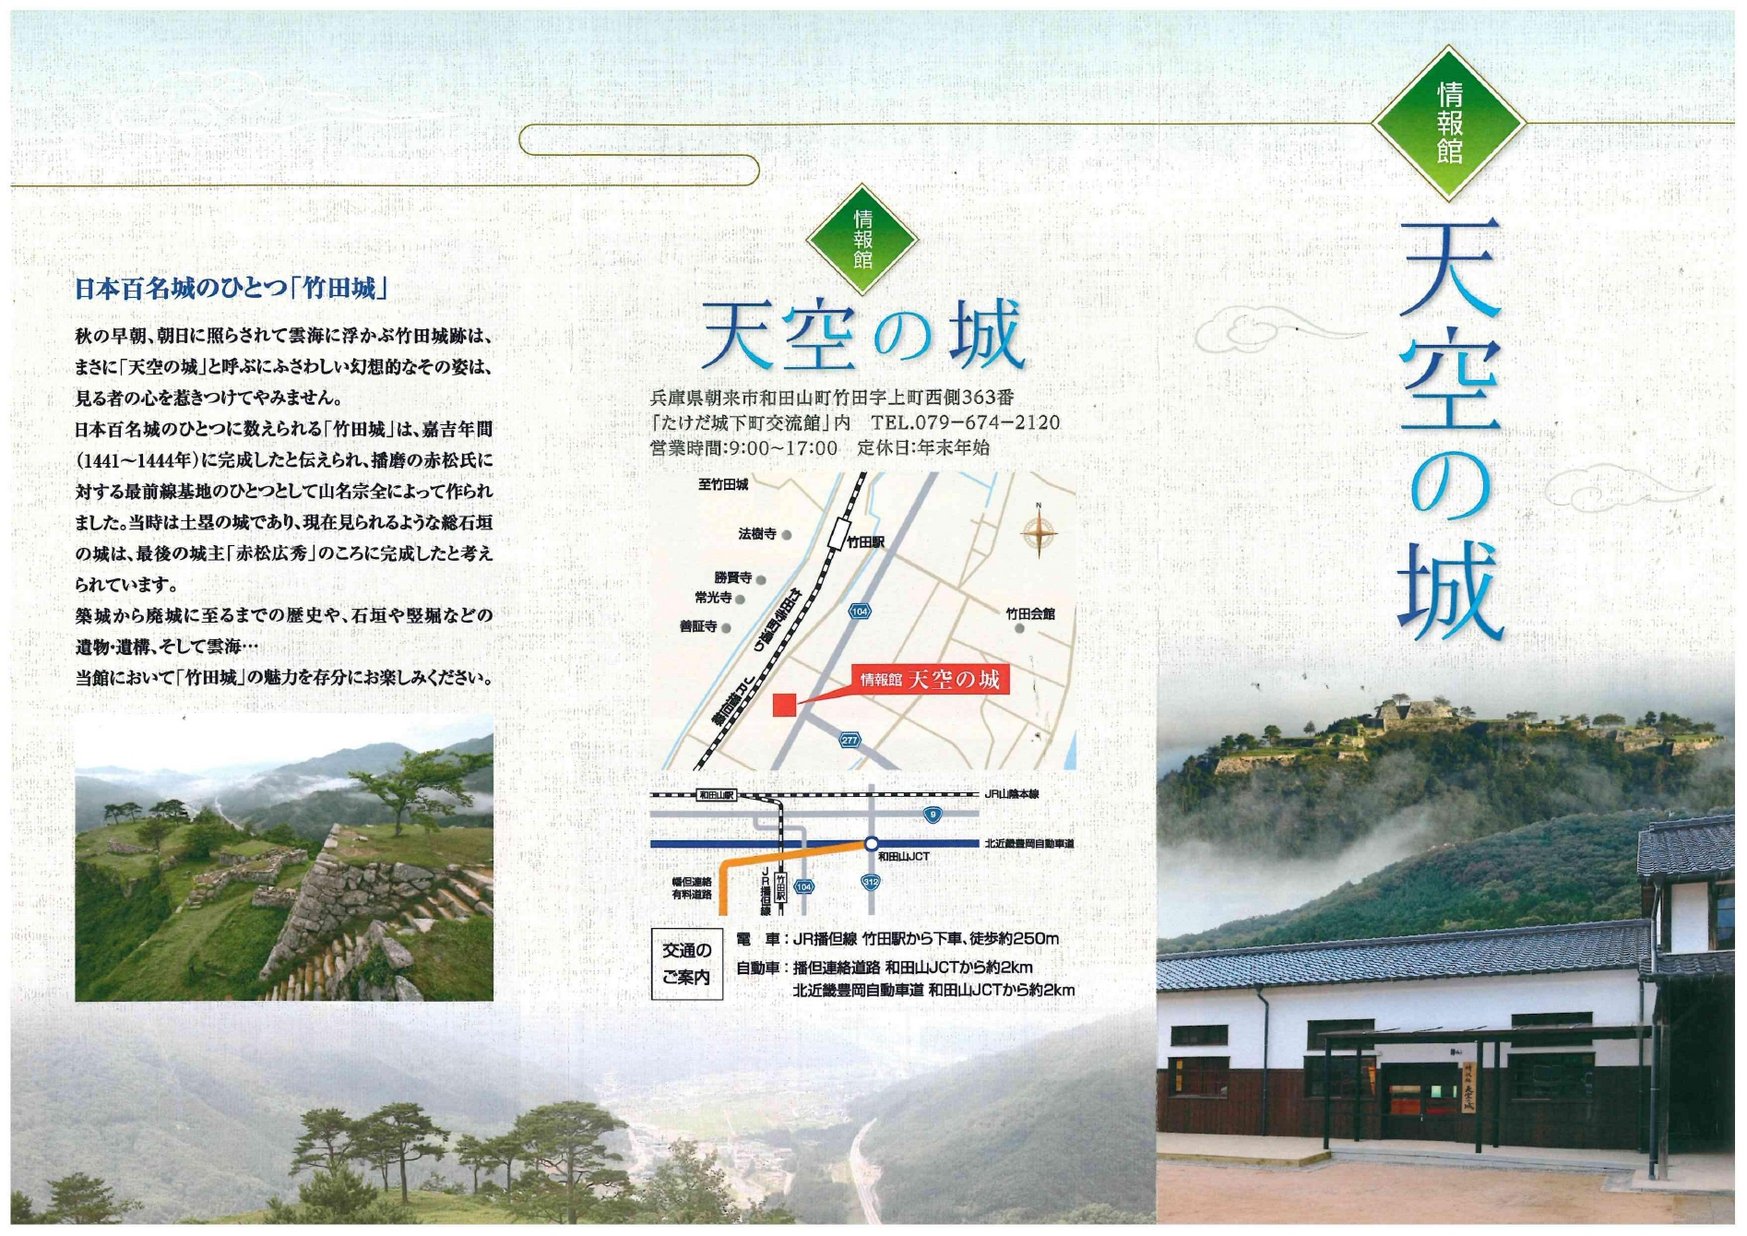 情報館天空の城 ヒョウゴイーブックス Hyogo Ebooks 兵庫県の電子書籍サイト